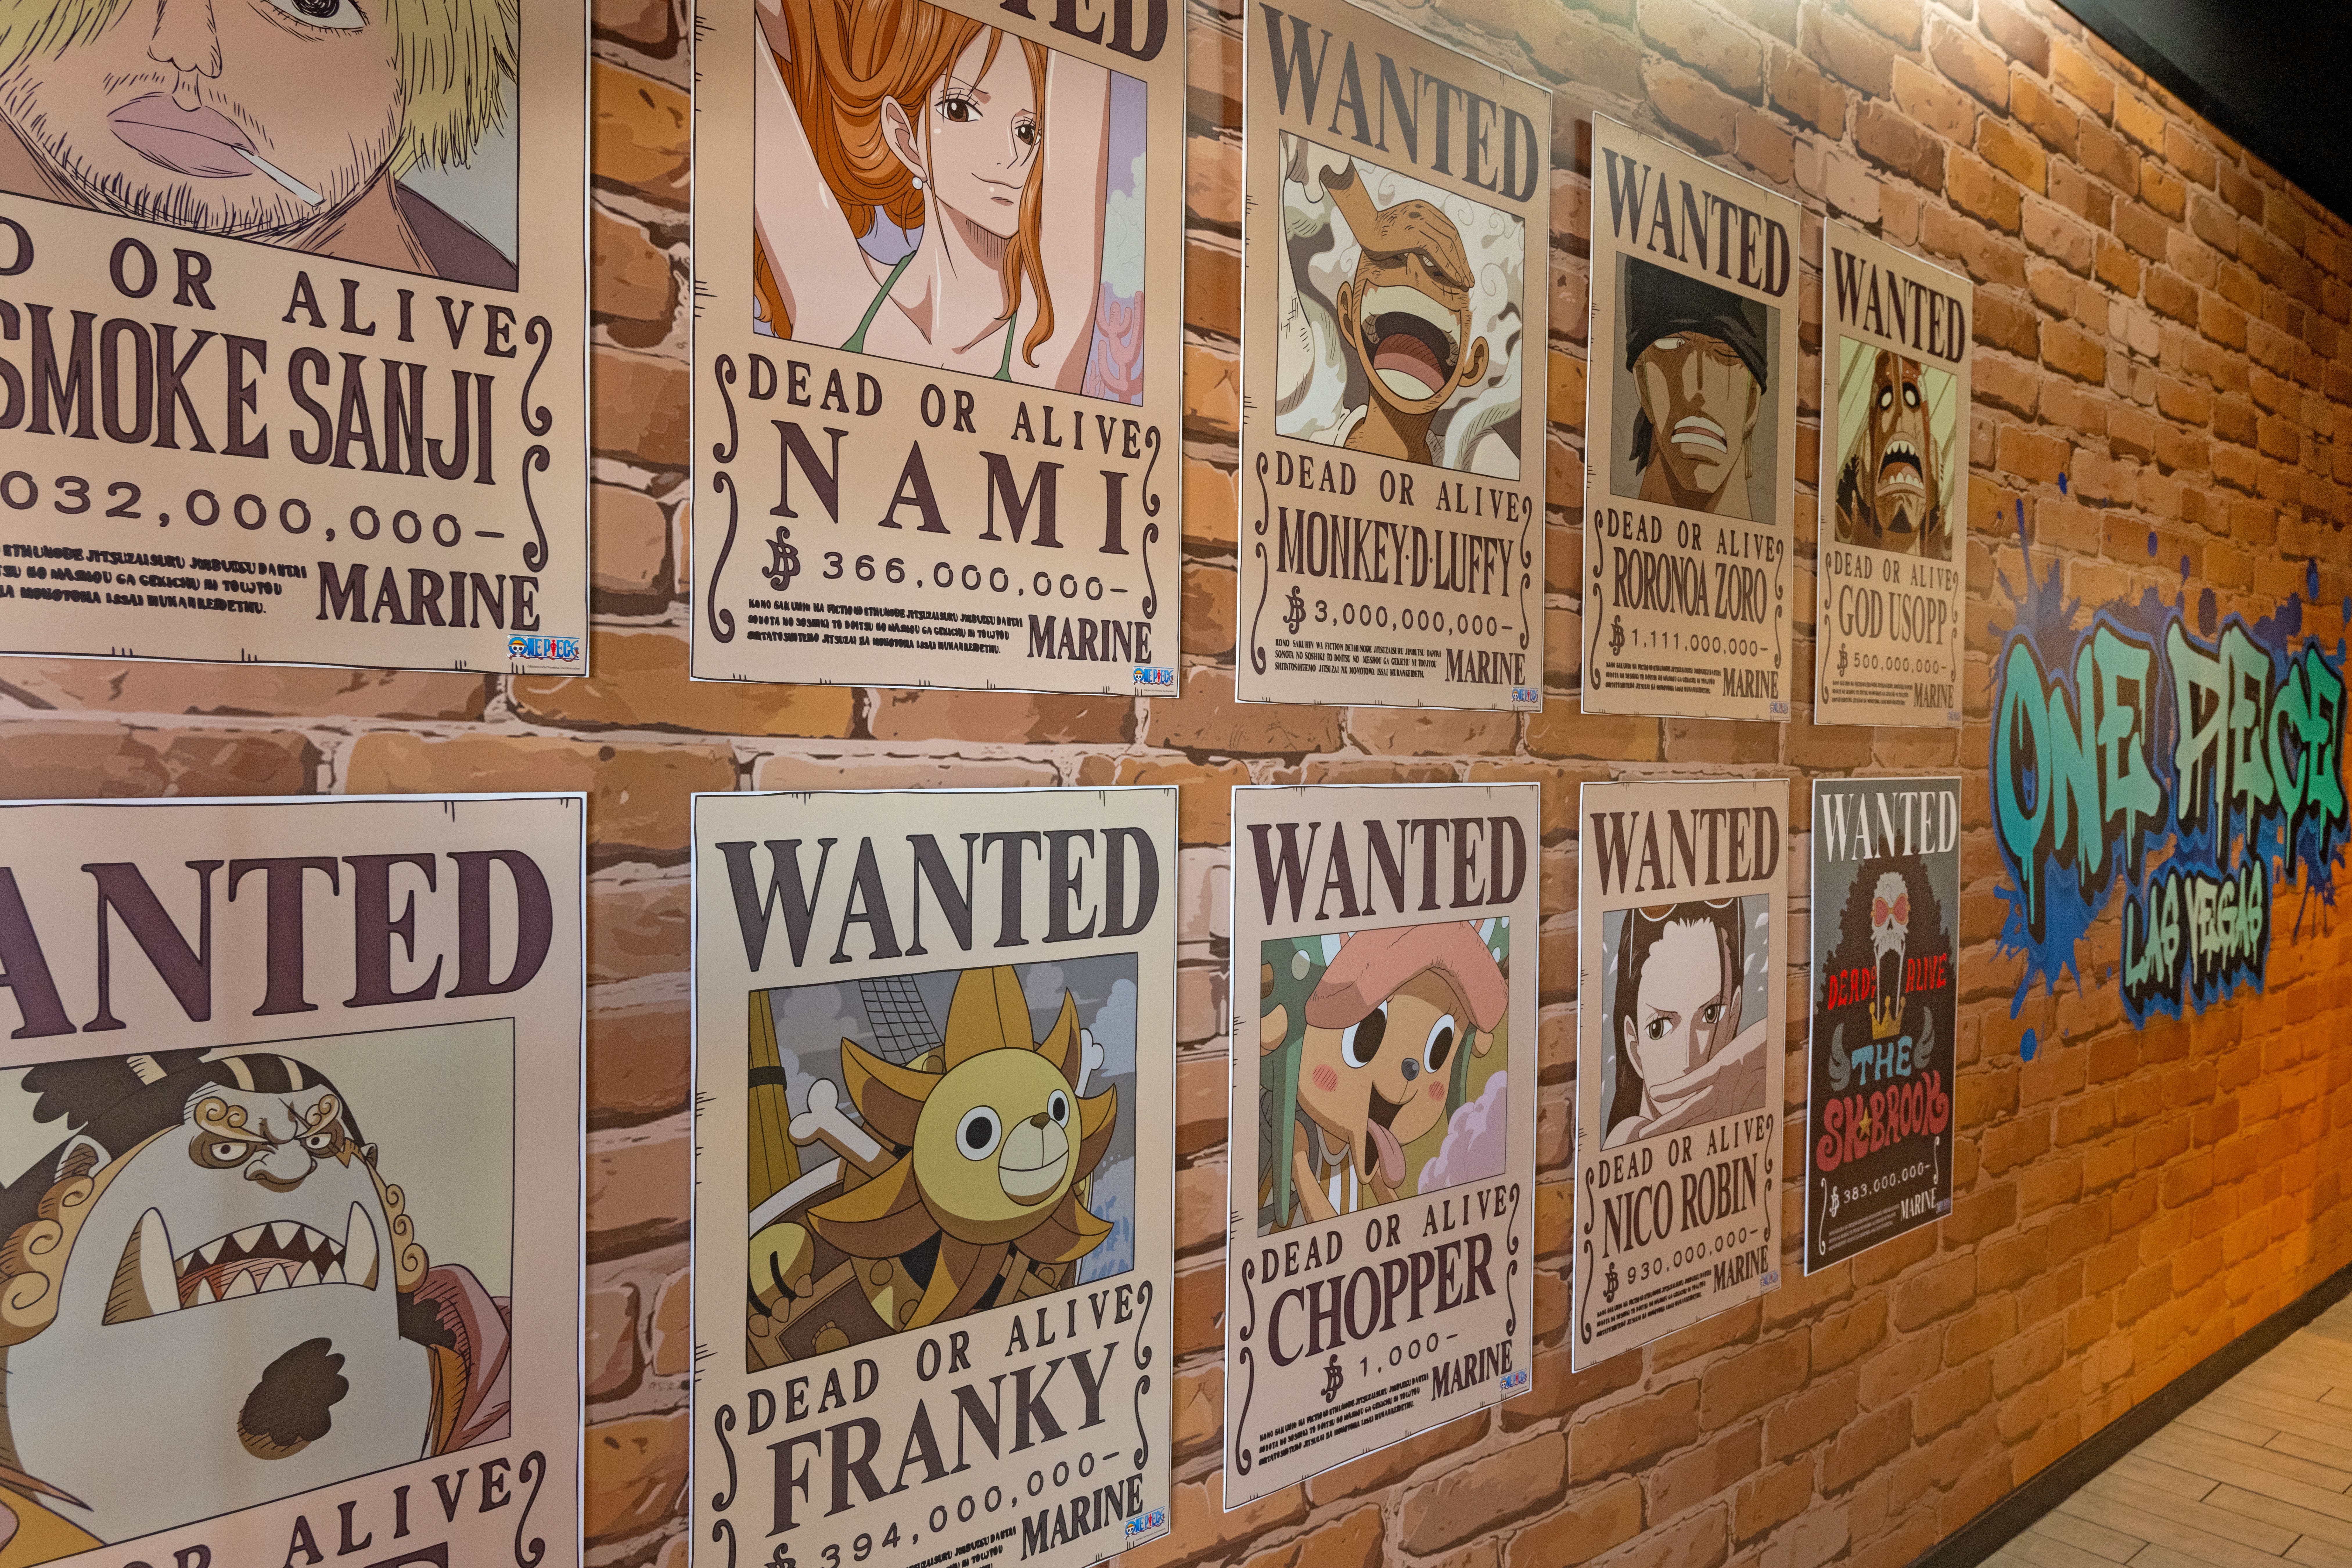 Первое в Америке кафе One Piece публикует официальные фотографии и видео перед торжественным открытием